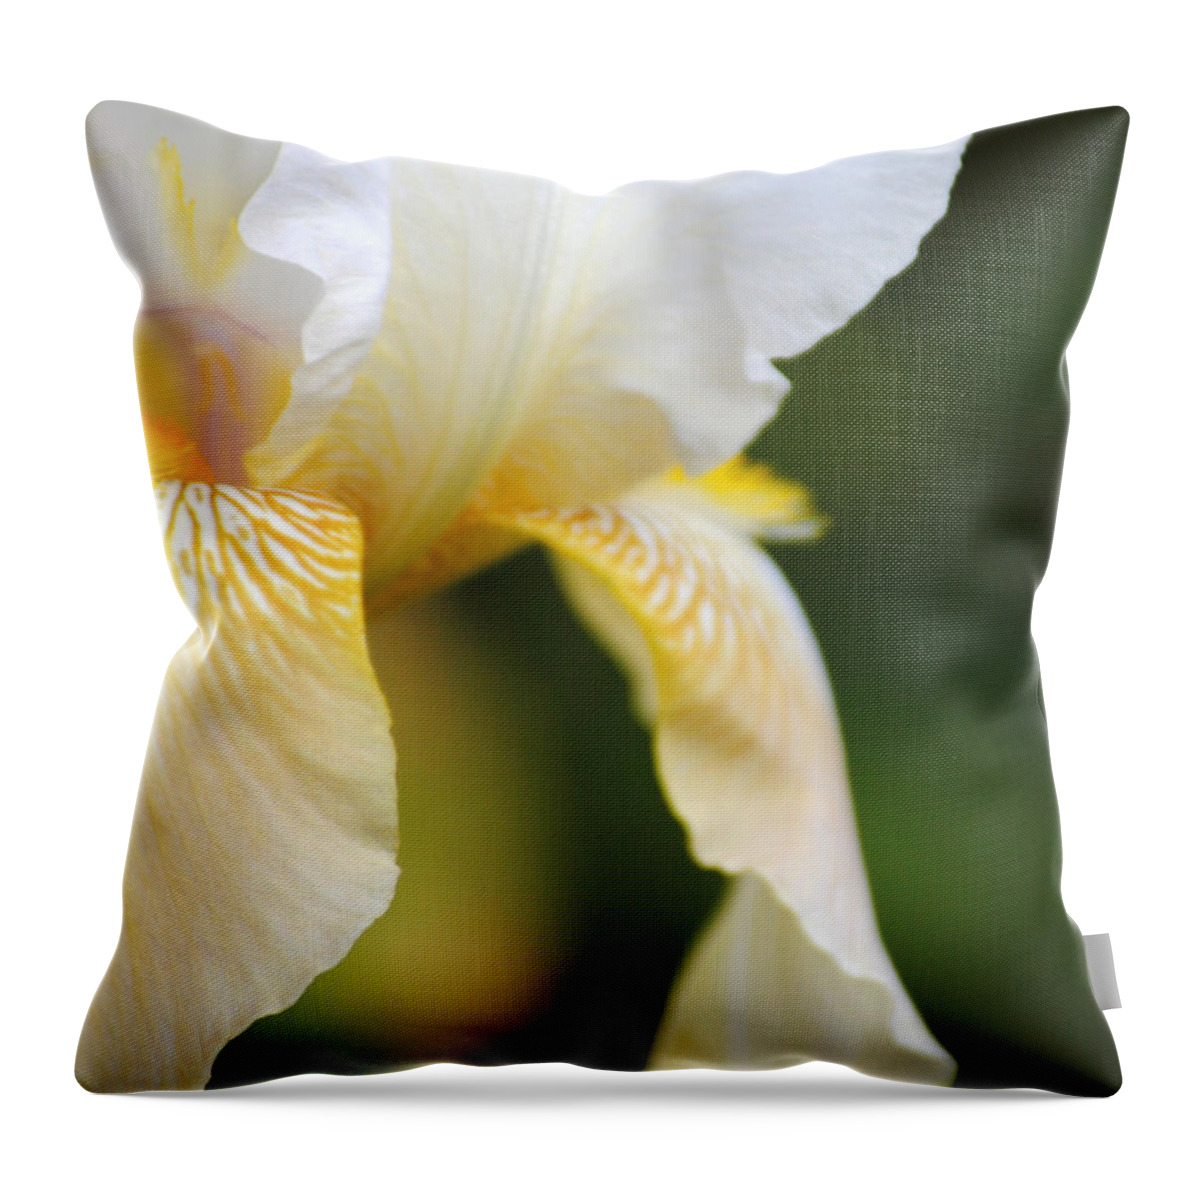 Iris Throw Pillow featuring the photograph White Iris I by Jai Johnson